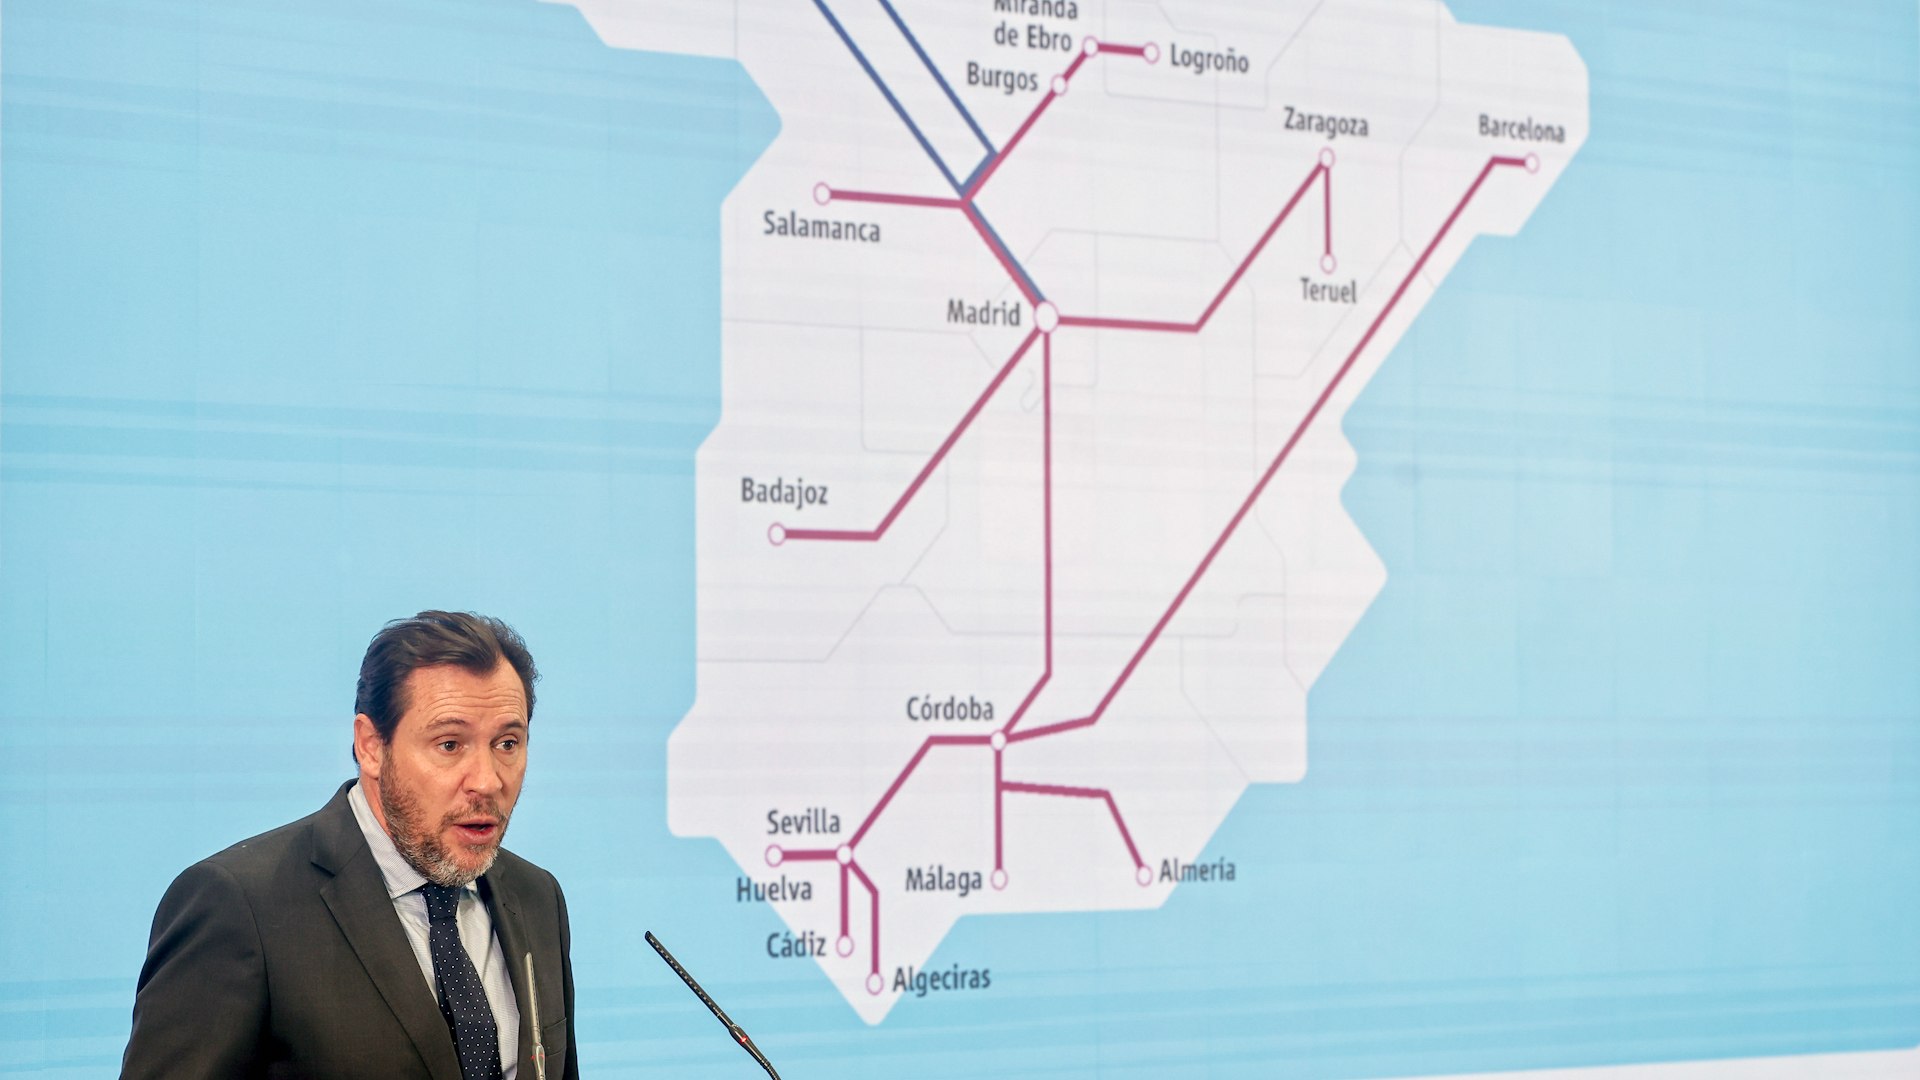 Logroo, Teruel, Salamanca, Badajoz... Puente anuncia ms trenes y servicios para las capitales sin alta velocidad